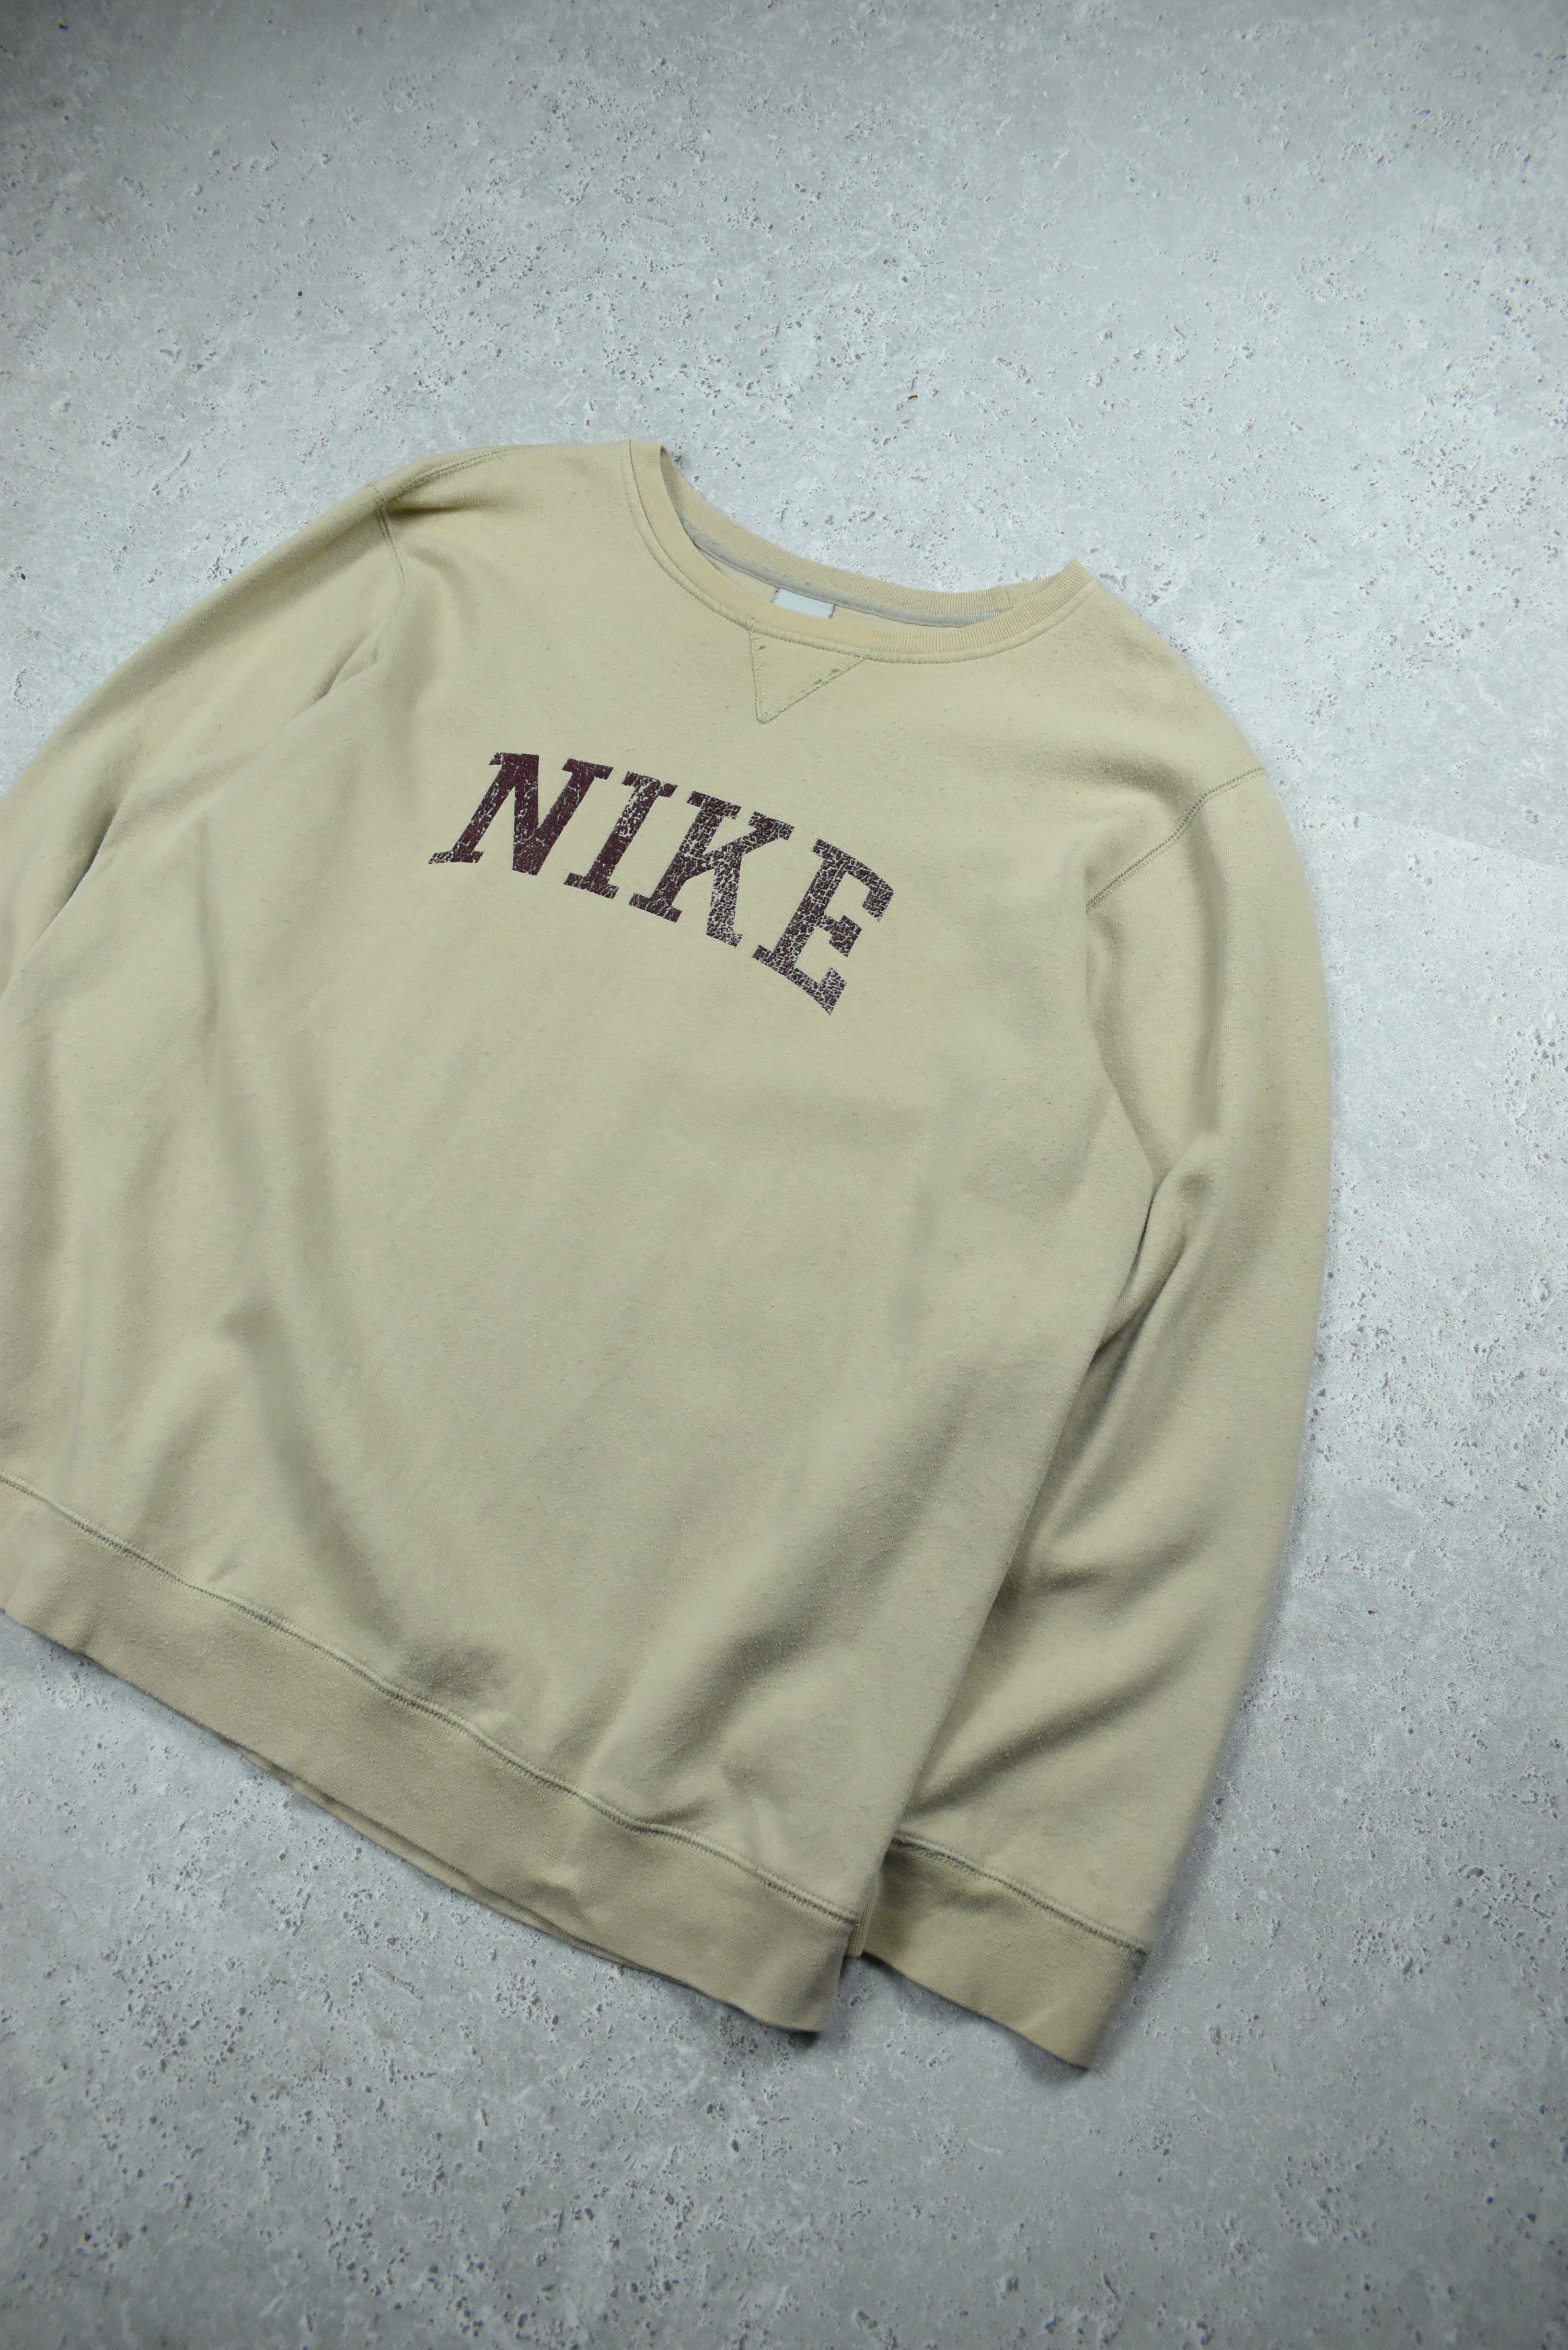 Vintage Nike Brown Print Sweatshirt Large